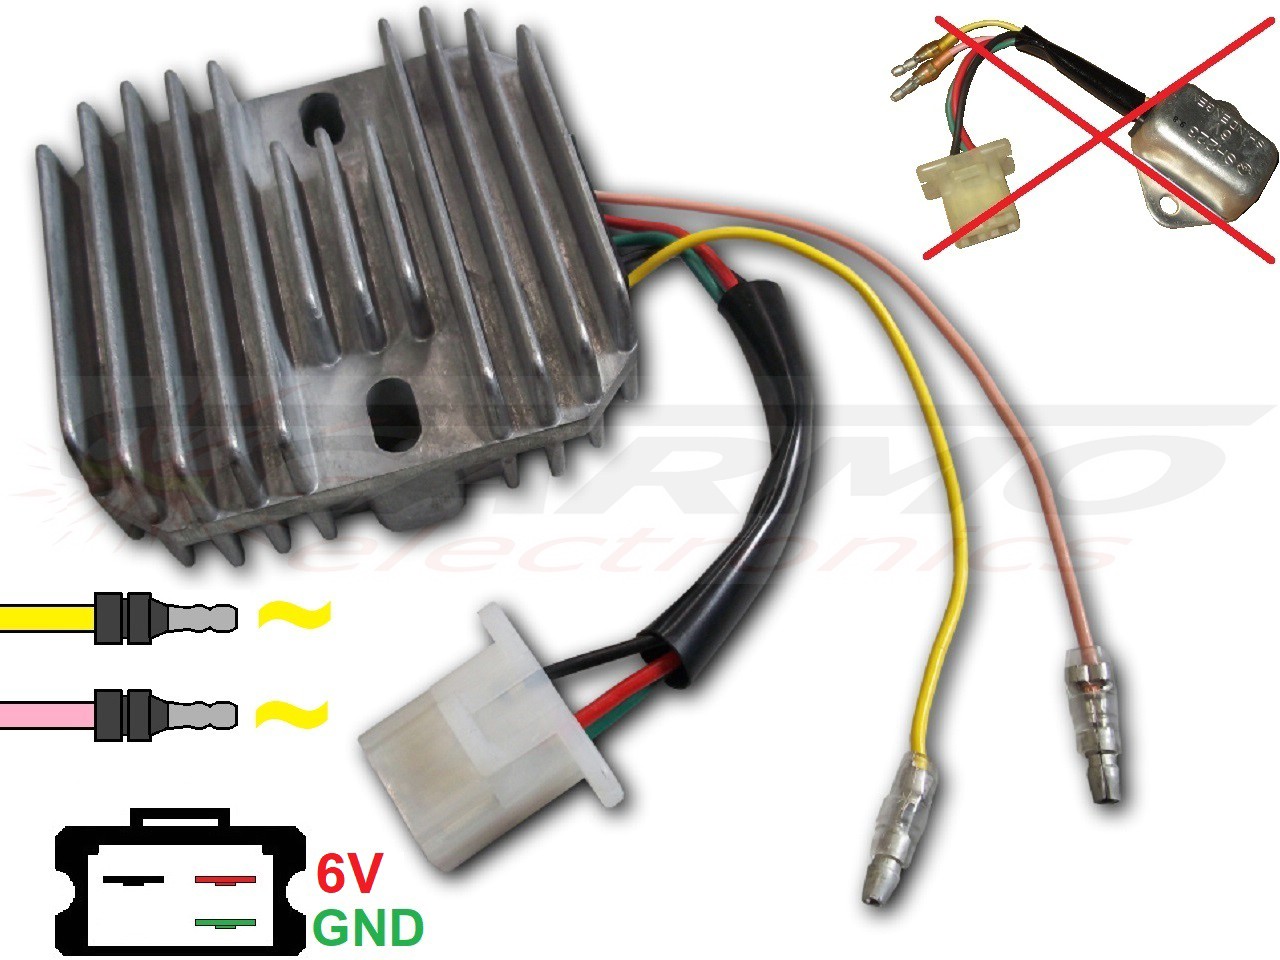 CARR681 SH223 Honda XL250S GN400 CB125s XL125s XL185s 6V Voltage regulator rectifier - Clique na Imagem para Fechar